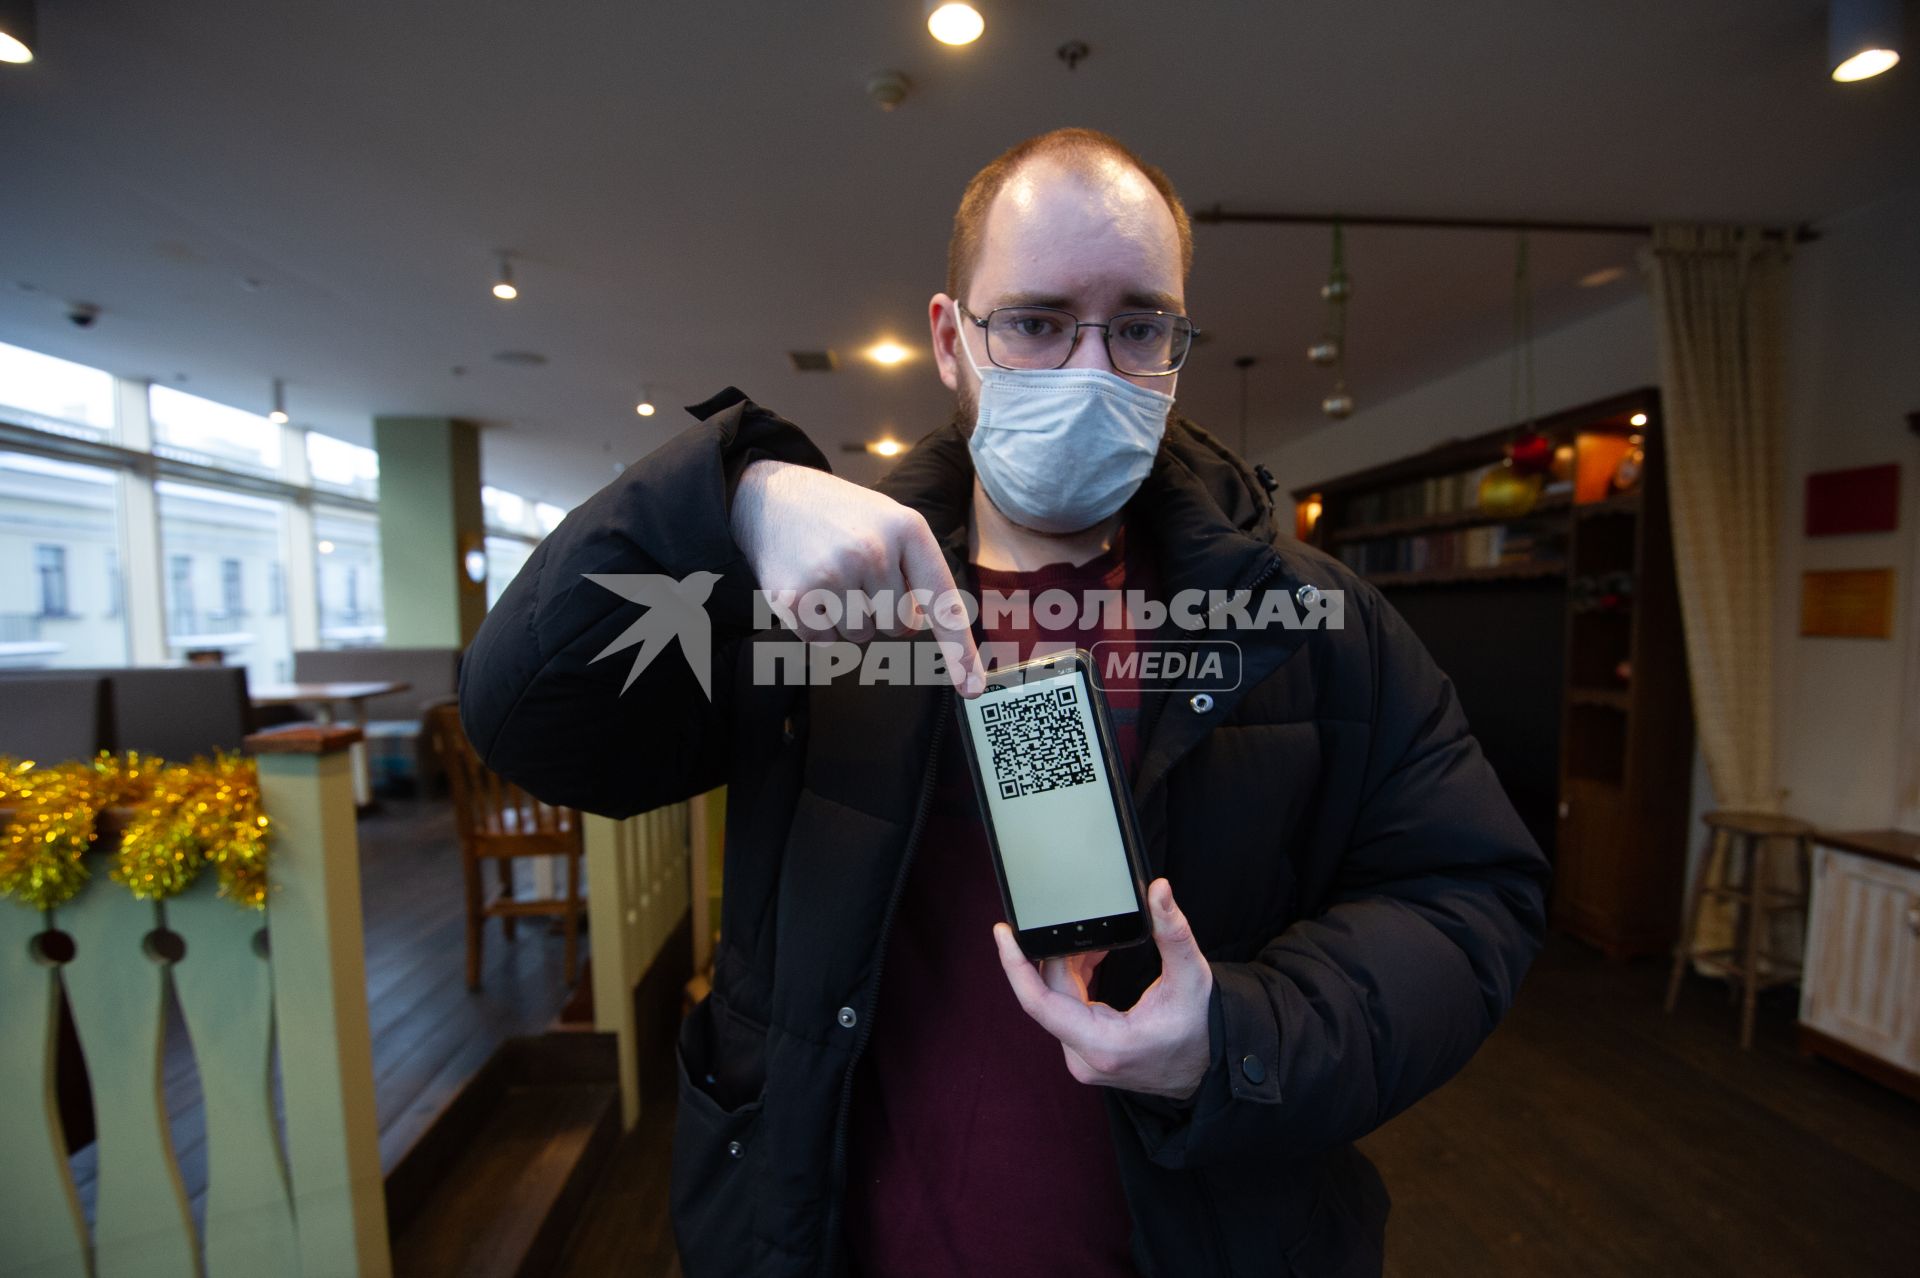 Санкт-Петербург. Мужчина демонстирует QR-код на экране мобильного телефона при входе в ресторан.